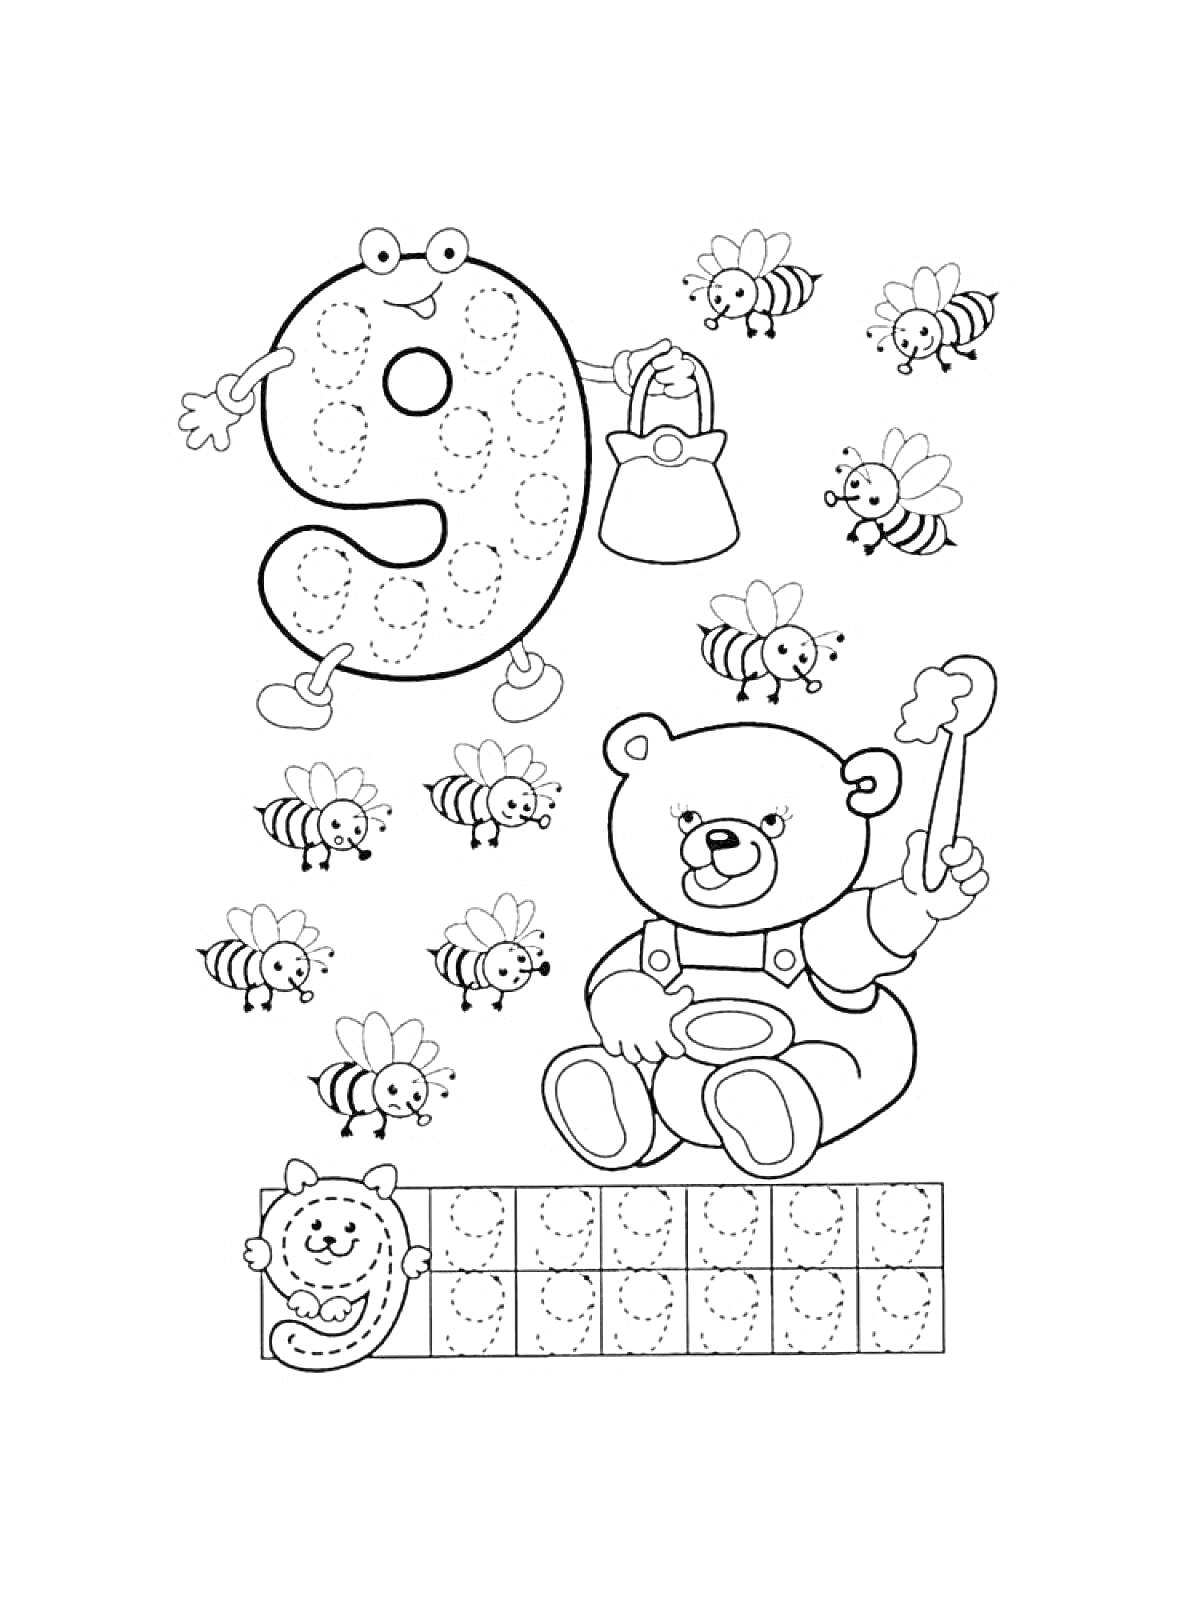 Прописи цифр: цифра 9 с гусеницей, медвежонок и пчелы